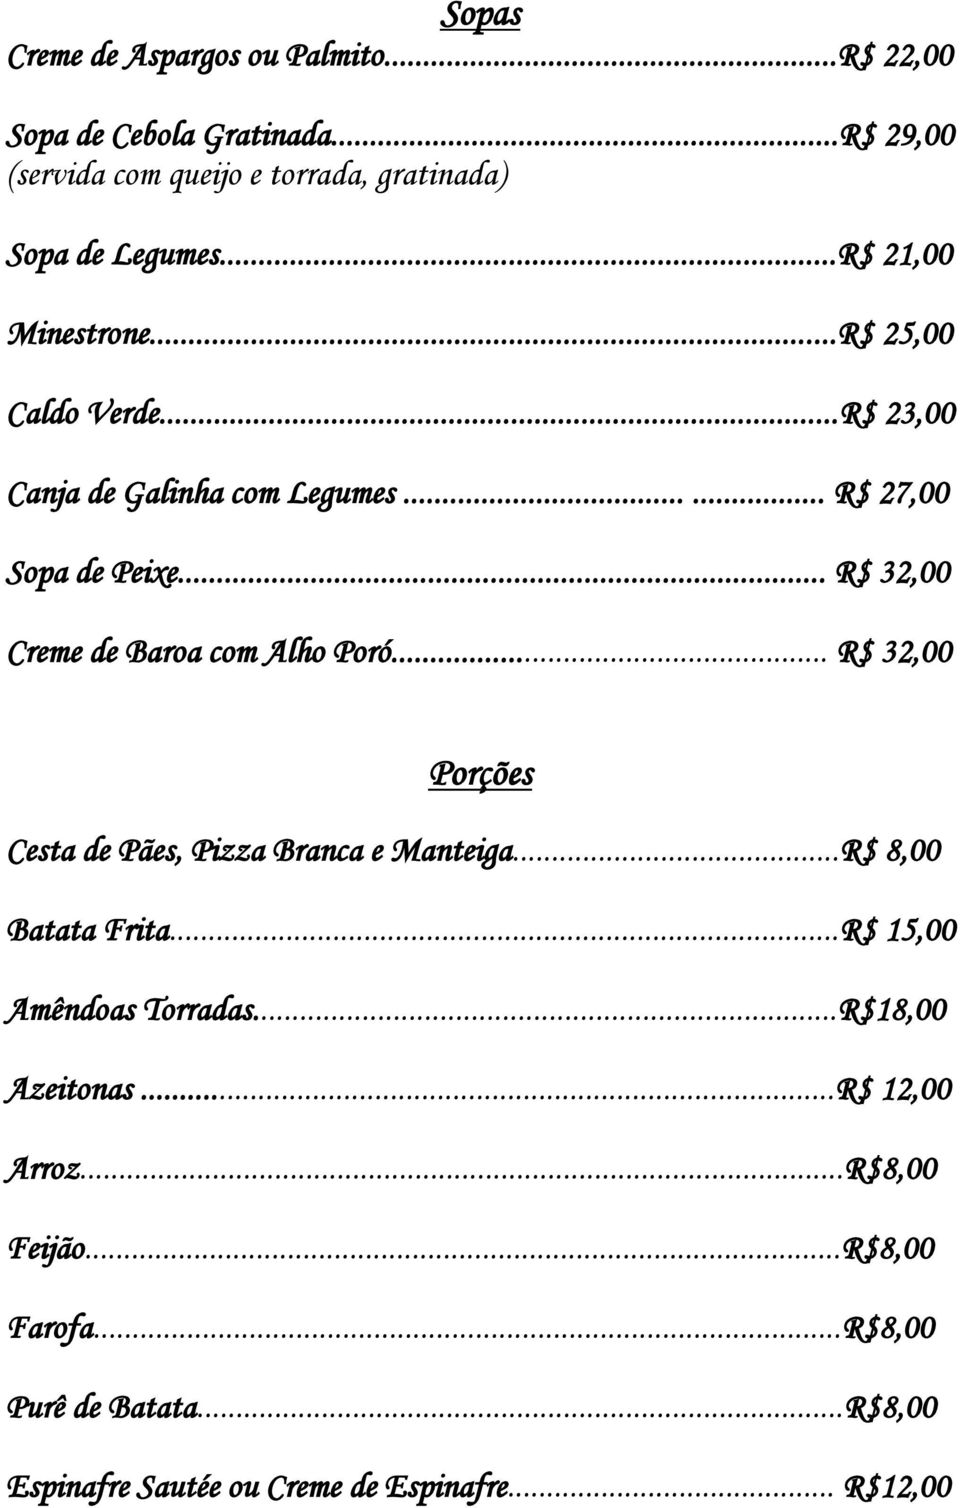 .. R$ 32,00 Creme de Baroa com Alho Poró... R$ 32,00 Porções Cesta de Pães, Pizza Branca e Manteiga...R$ 8,00 Batata Frita.